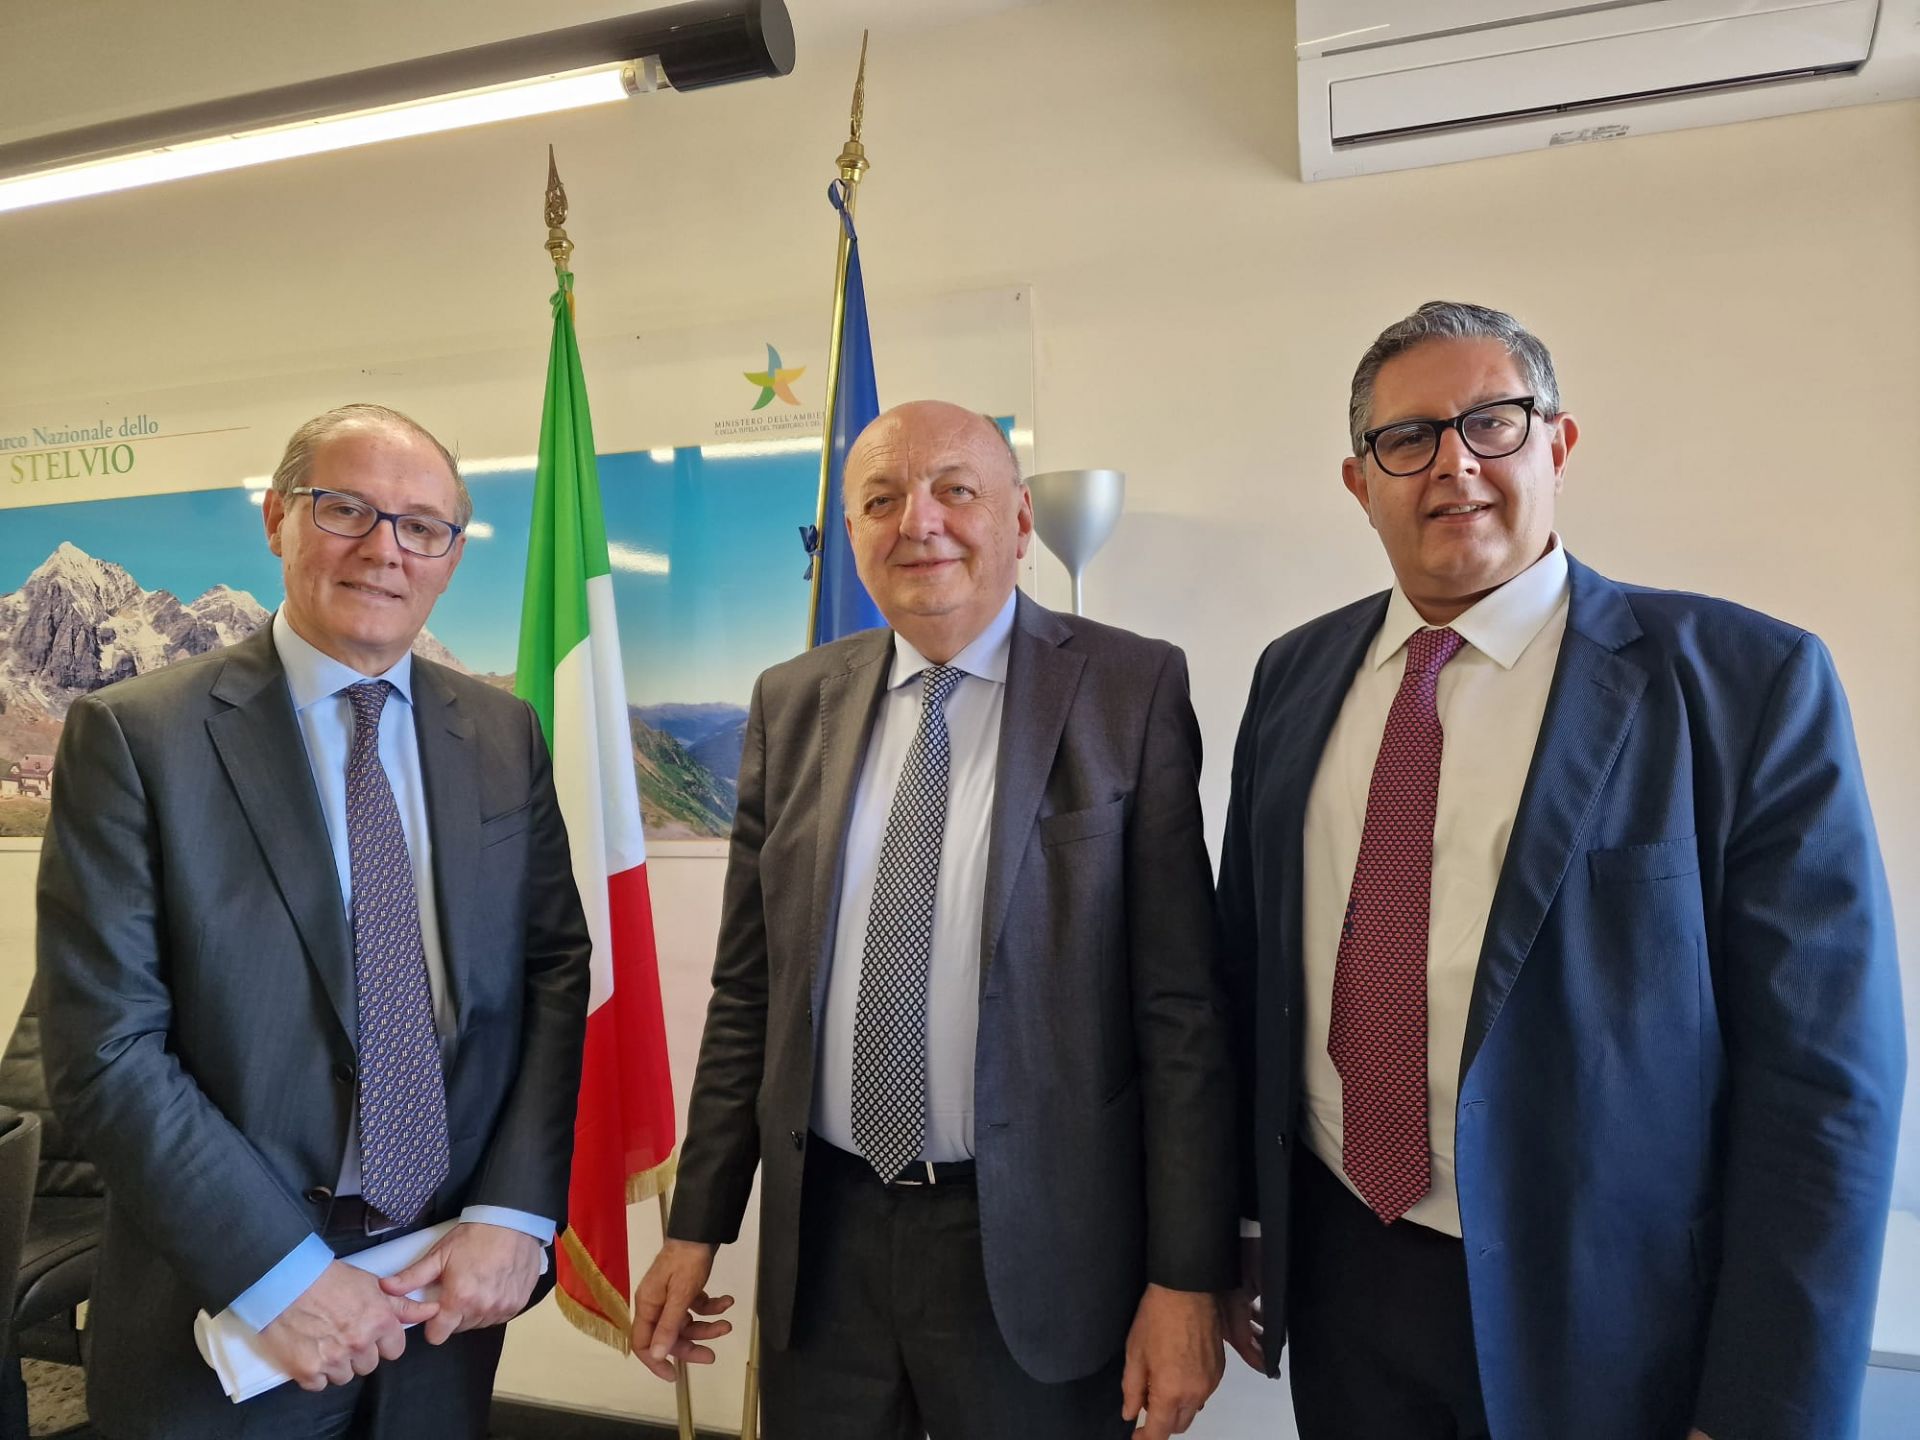 Ambiente, il presidente Toti incontra il ministro Pichetto: "Focus sui progetti che riguardano la Liguria"